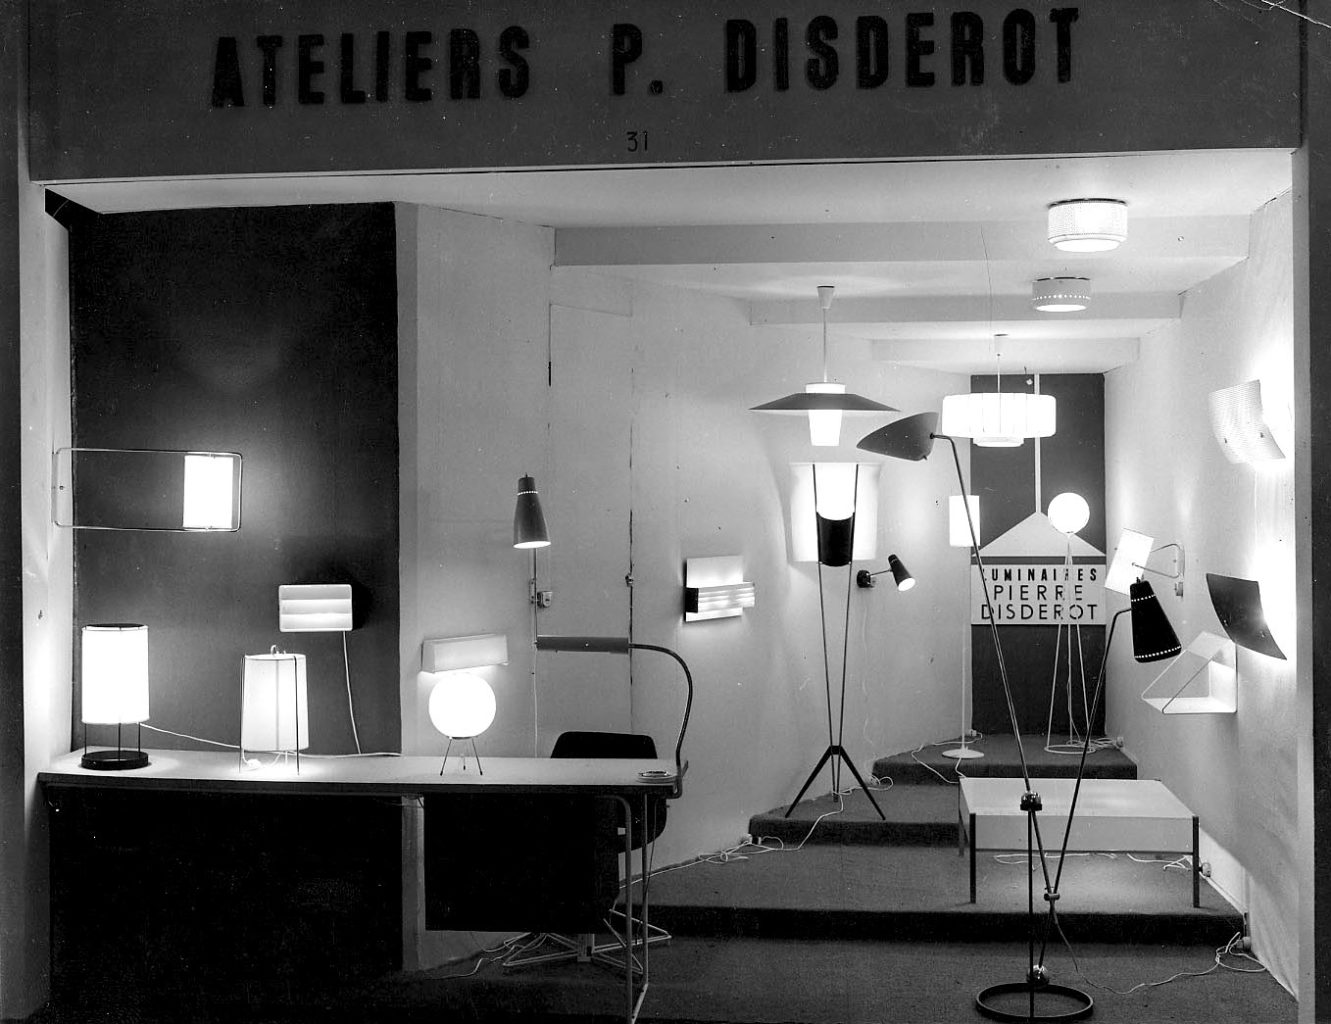 Stand Pierre Disderot au Salon des Arts Ménagers